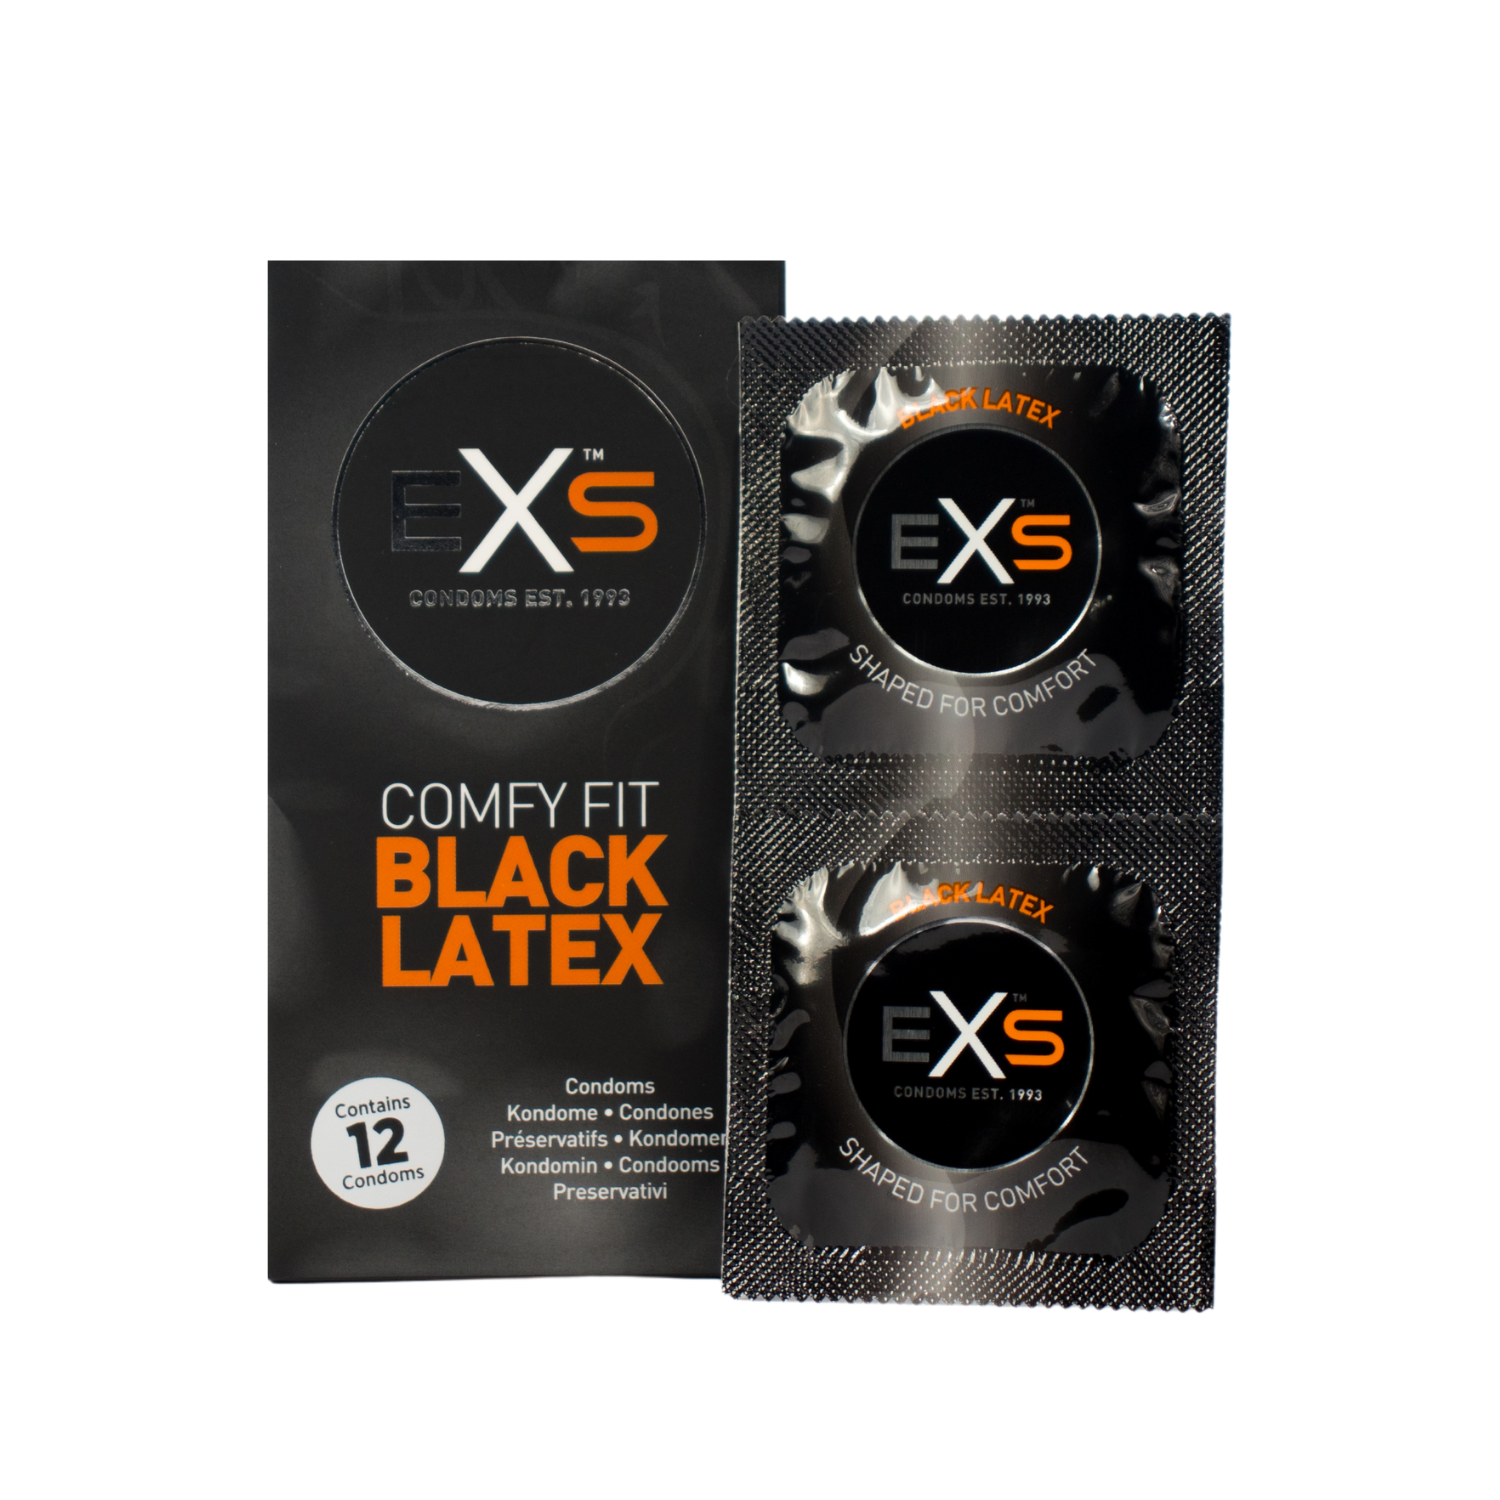 Zwarte latex condooms zijn gesschikt voor een spannende date of sexfeest. Toys en condooms voor sexfeesten koop je bij Flavourez.nl